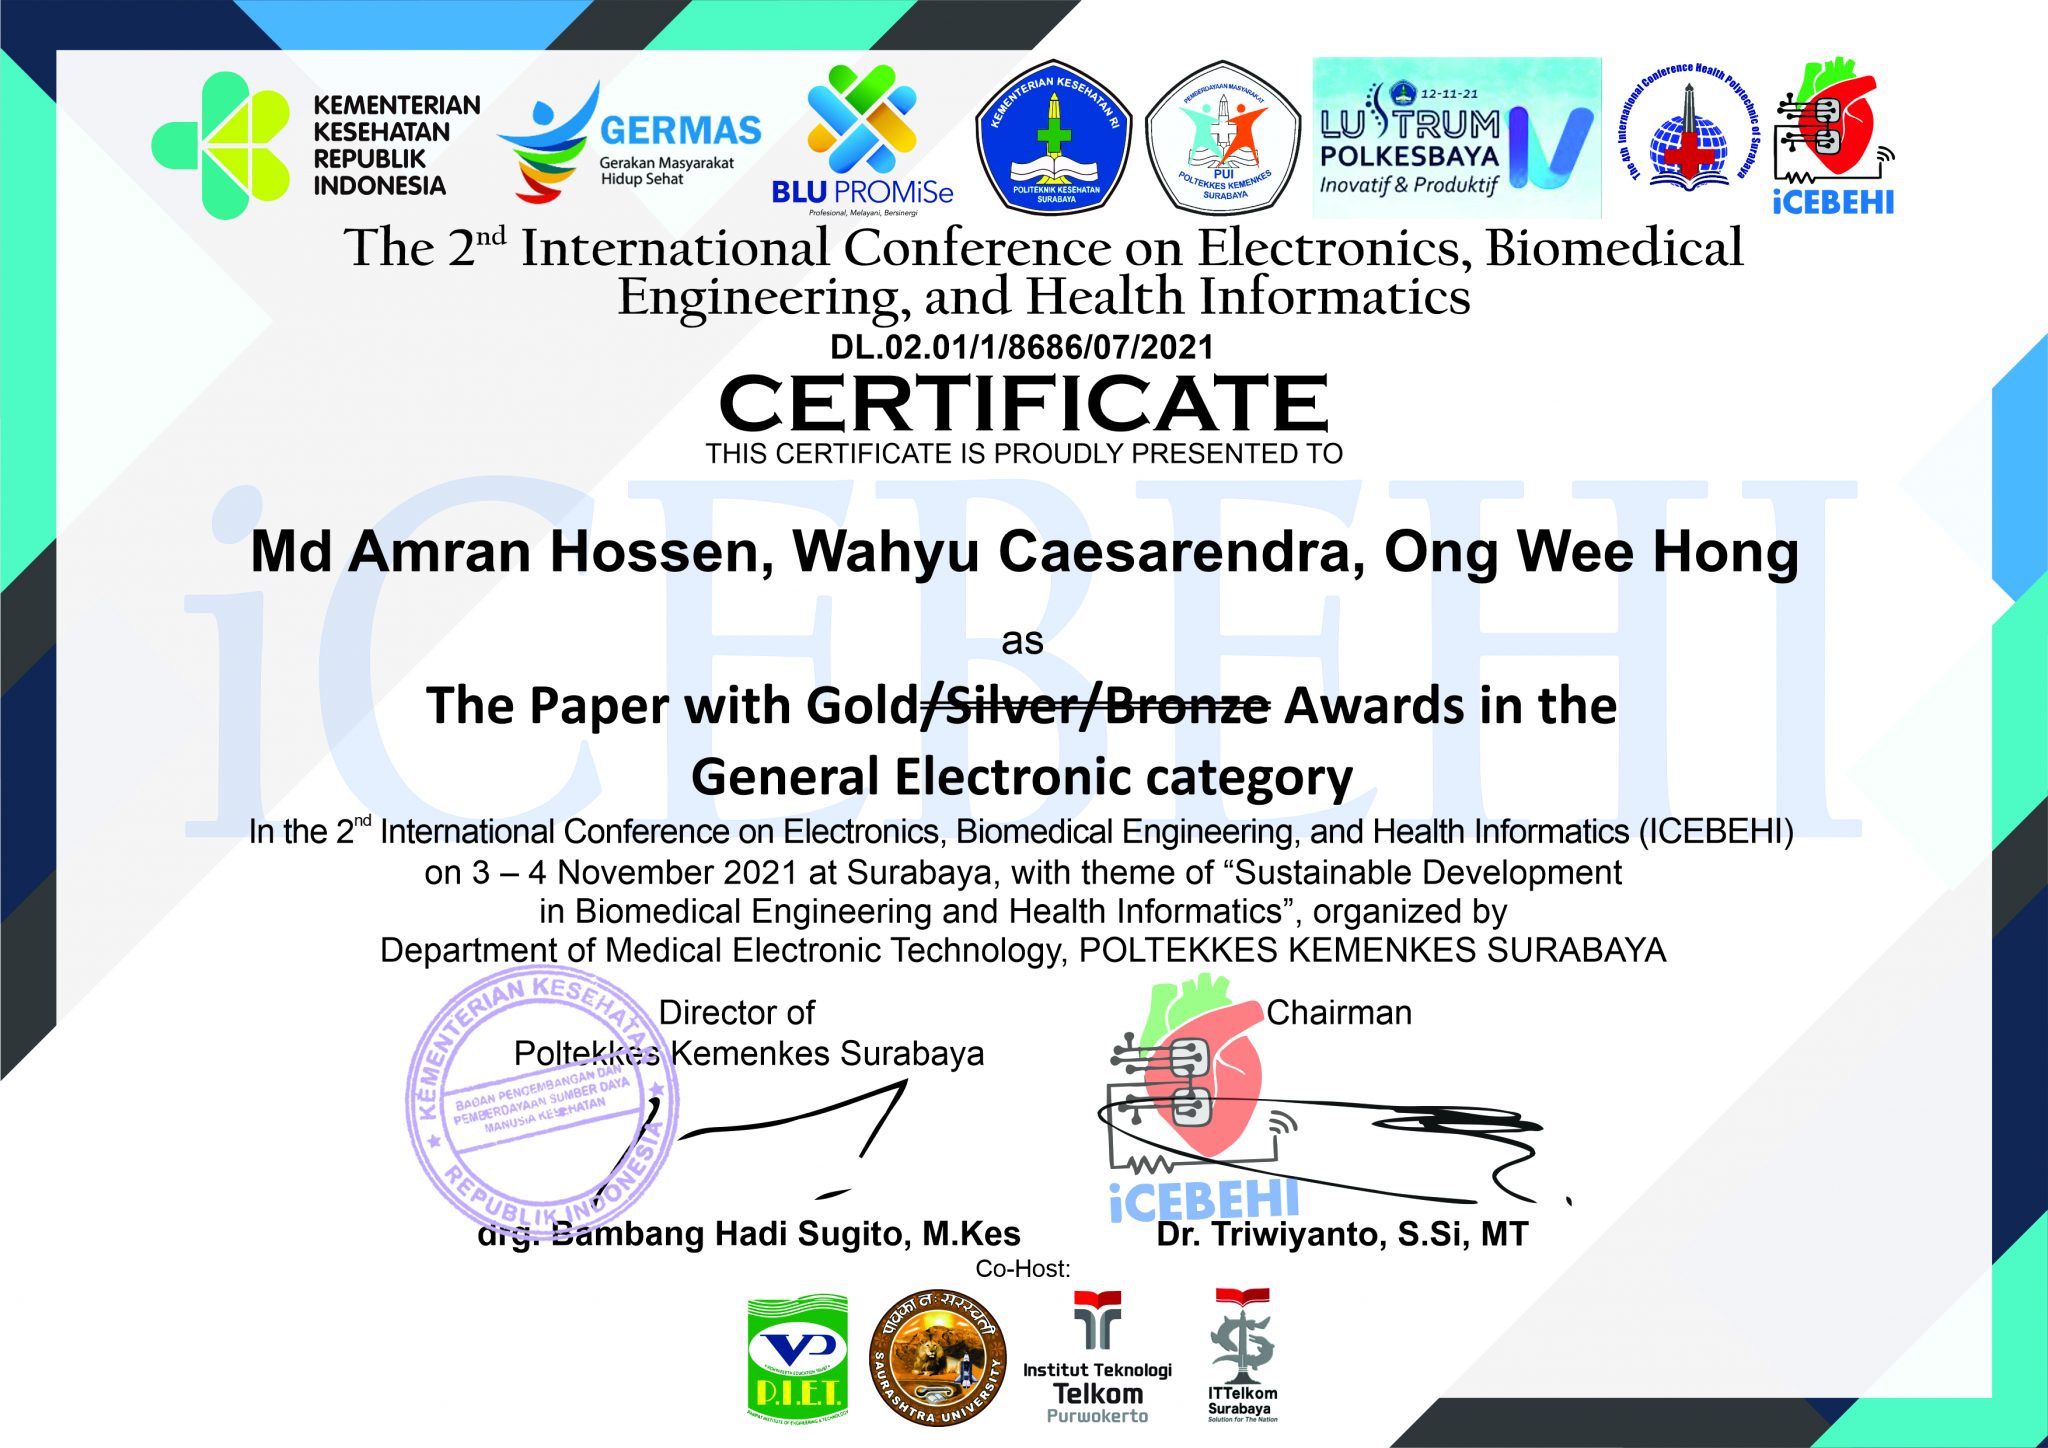 Amran’s paper received Best Paper Award at ICEBEHI 2021